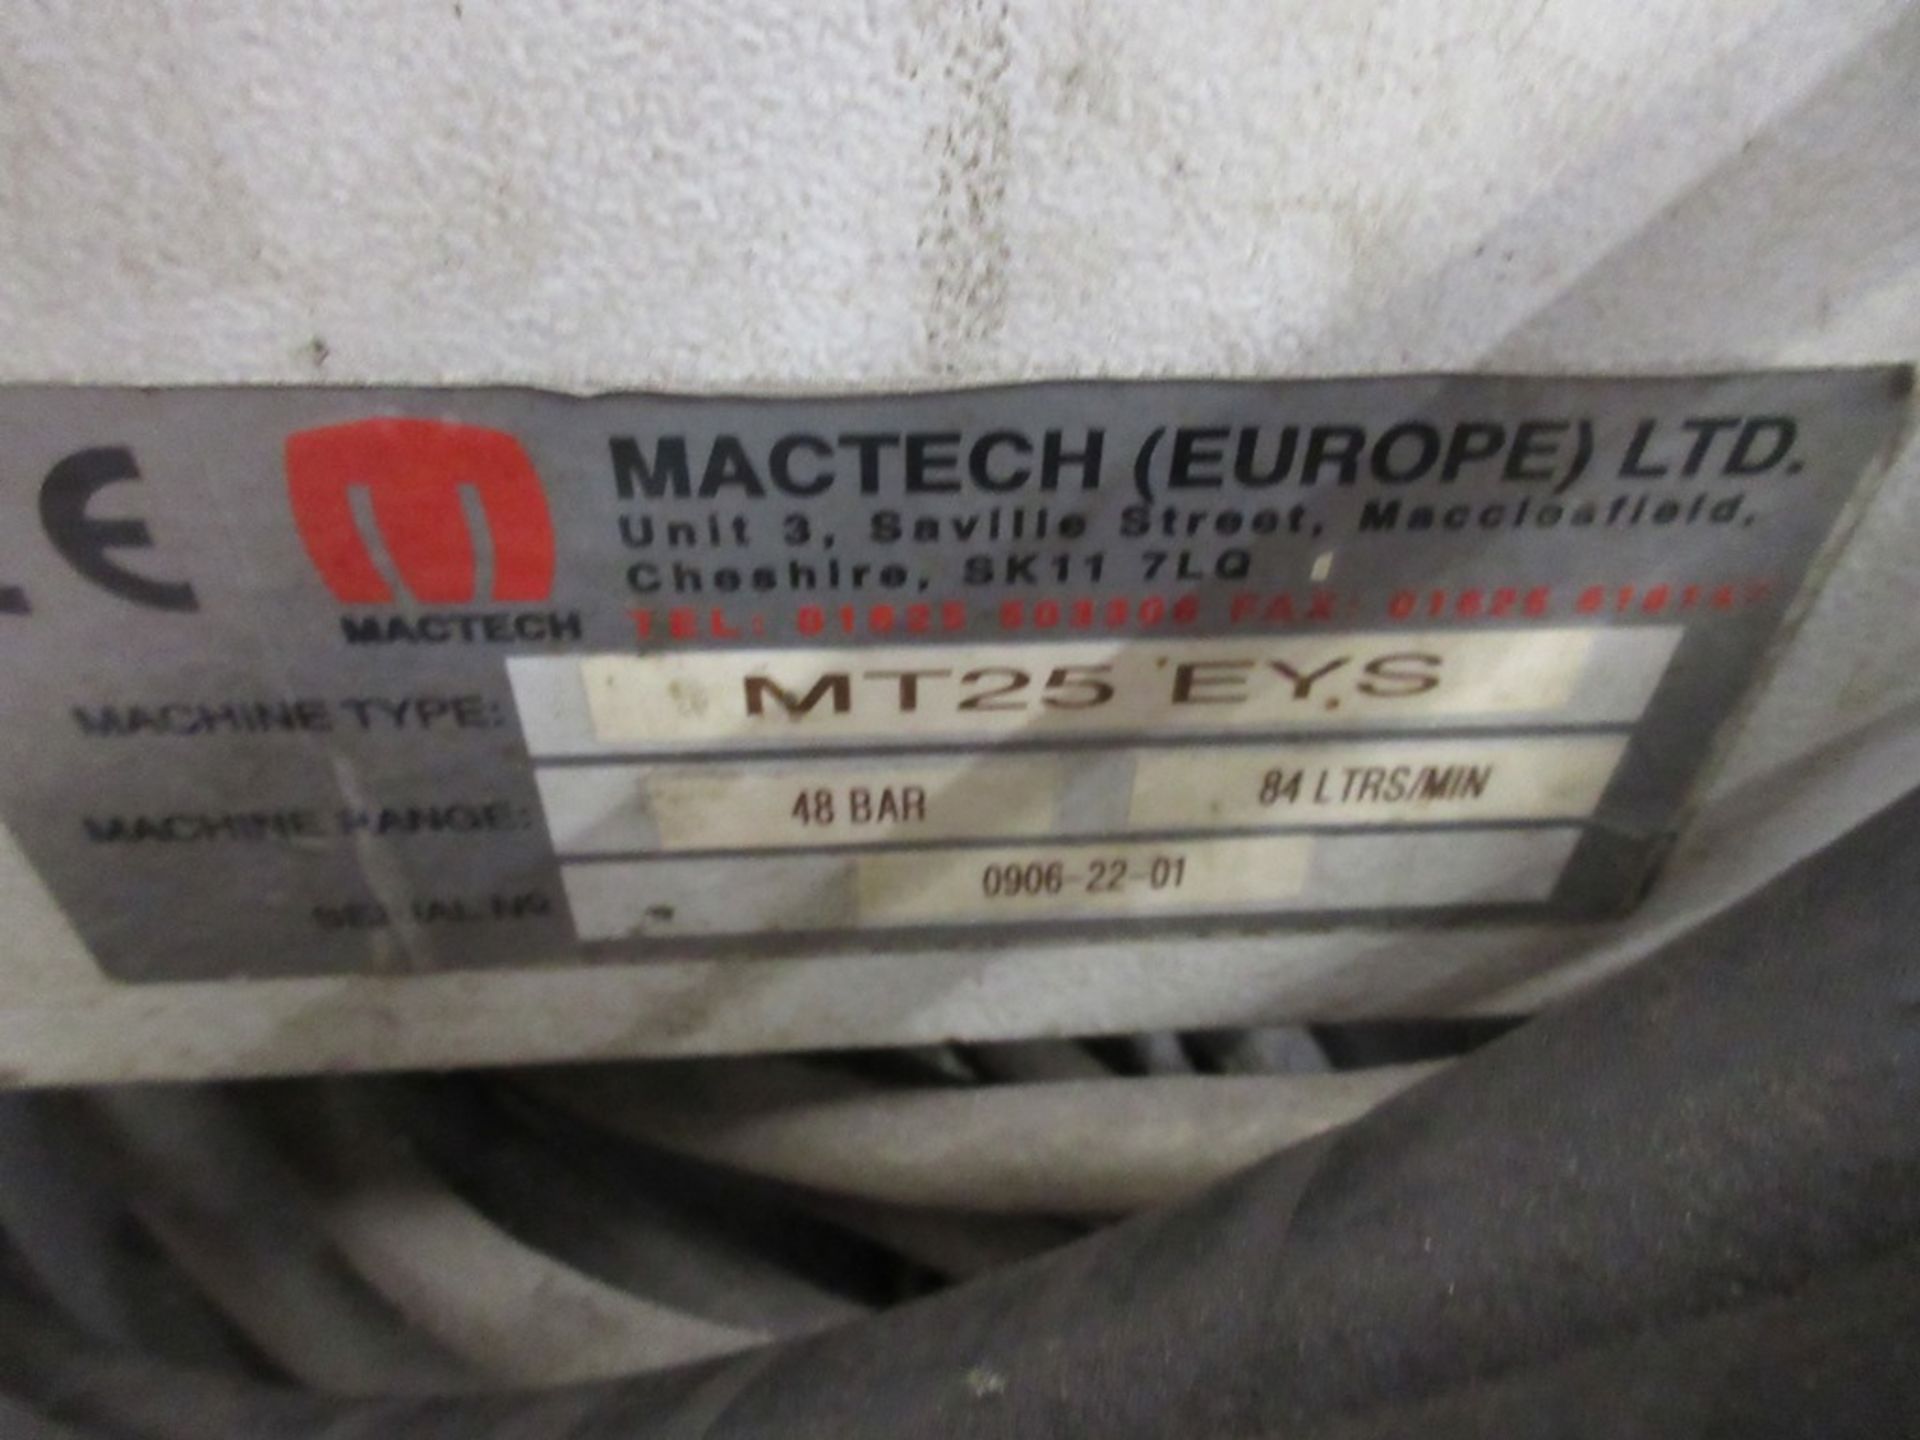 Mactech MT25 EYS clam lathe, serial no. 0906-22-61 clam diameter 800mm, clam model 8224833, serial - Image 4 of 7